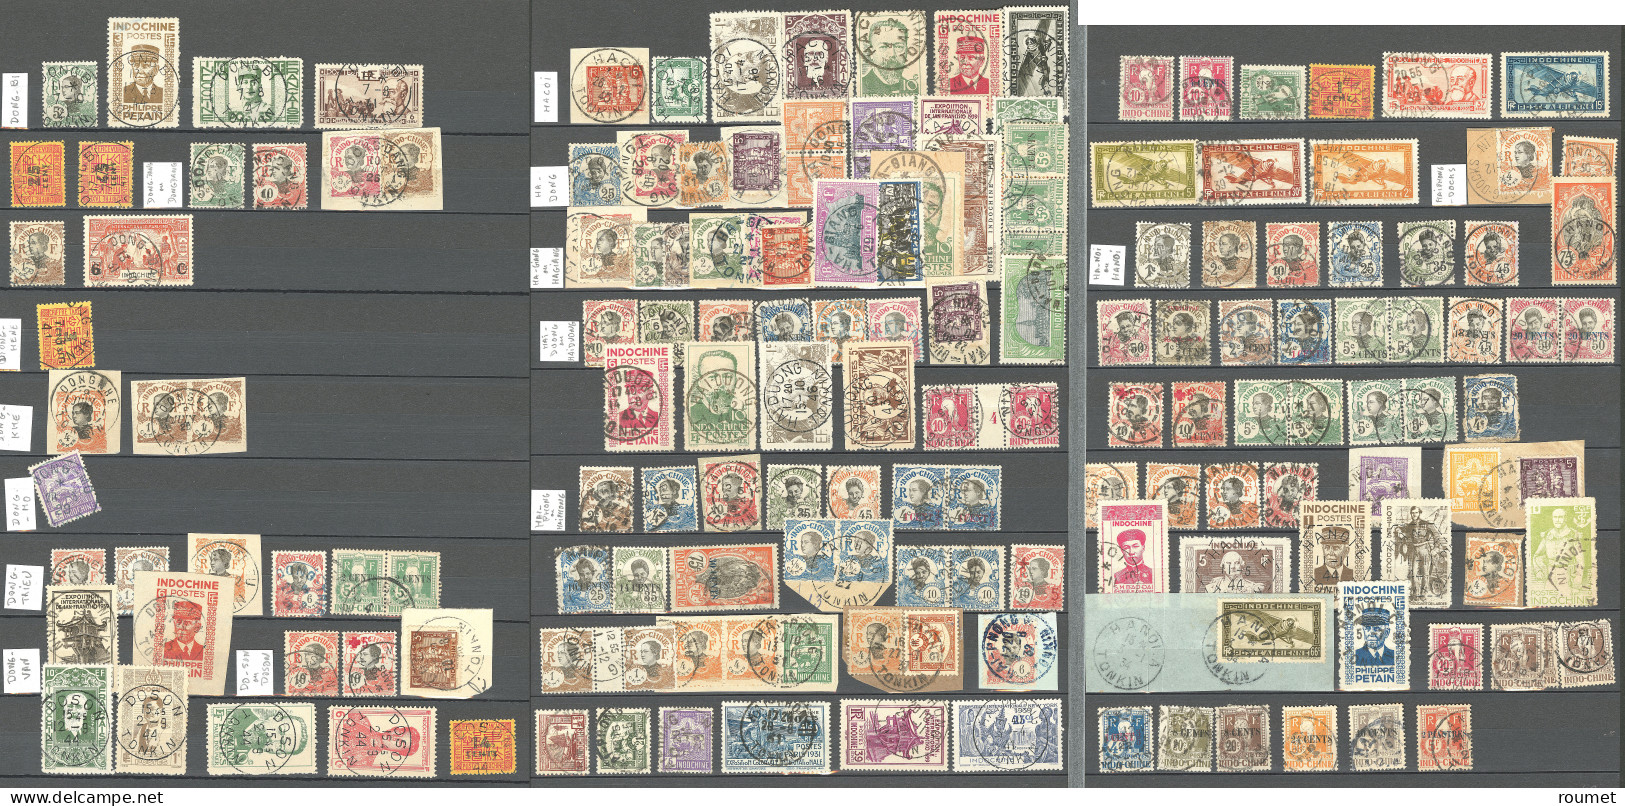 Collection. 1907-1945 (Poste, PA, Taxe), obl choisies de petits bureaux du Tonkin entre Backan et Yen-Minh. - TB ou B